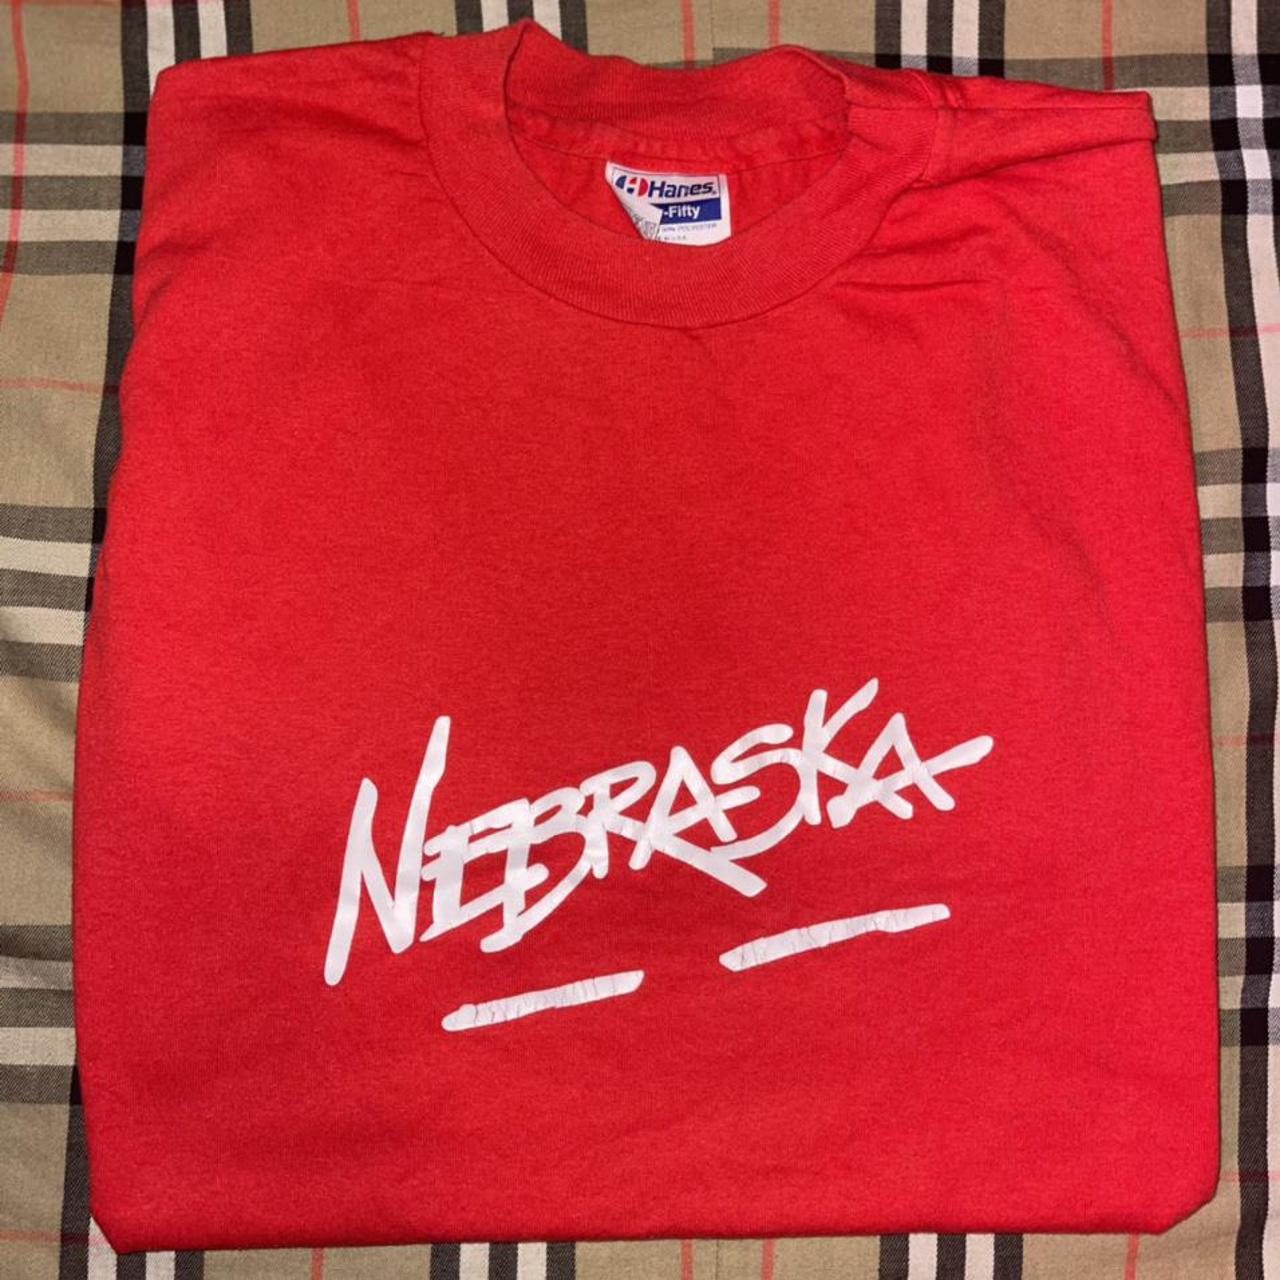 Vintage 90s single stitch Nebraska tee t shirt on a... - Depop